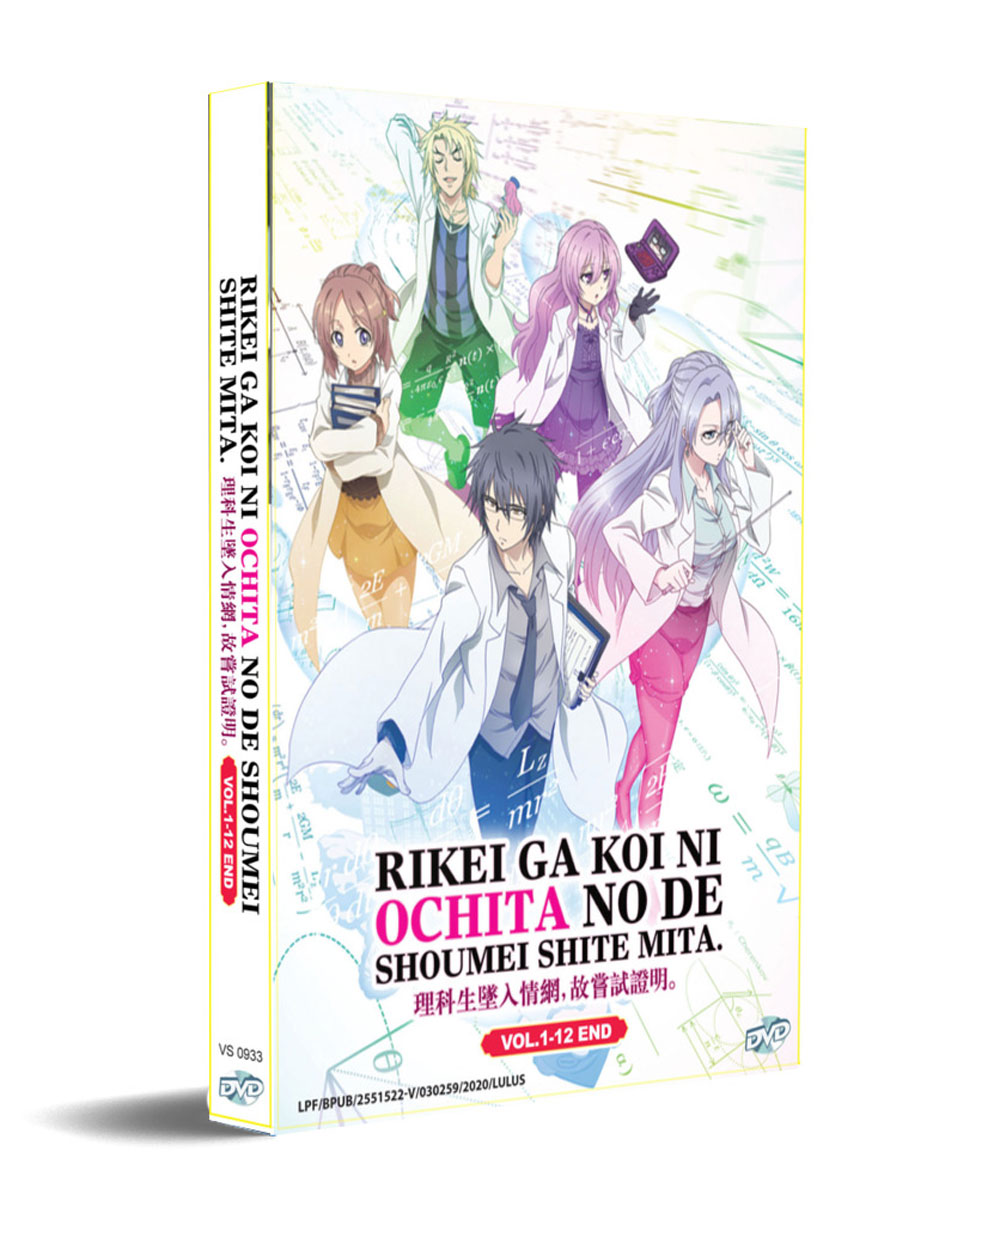 Rikei ga Koi ni Ochita no de Shoumei shitemita (DVD) (2020) Anime